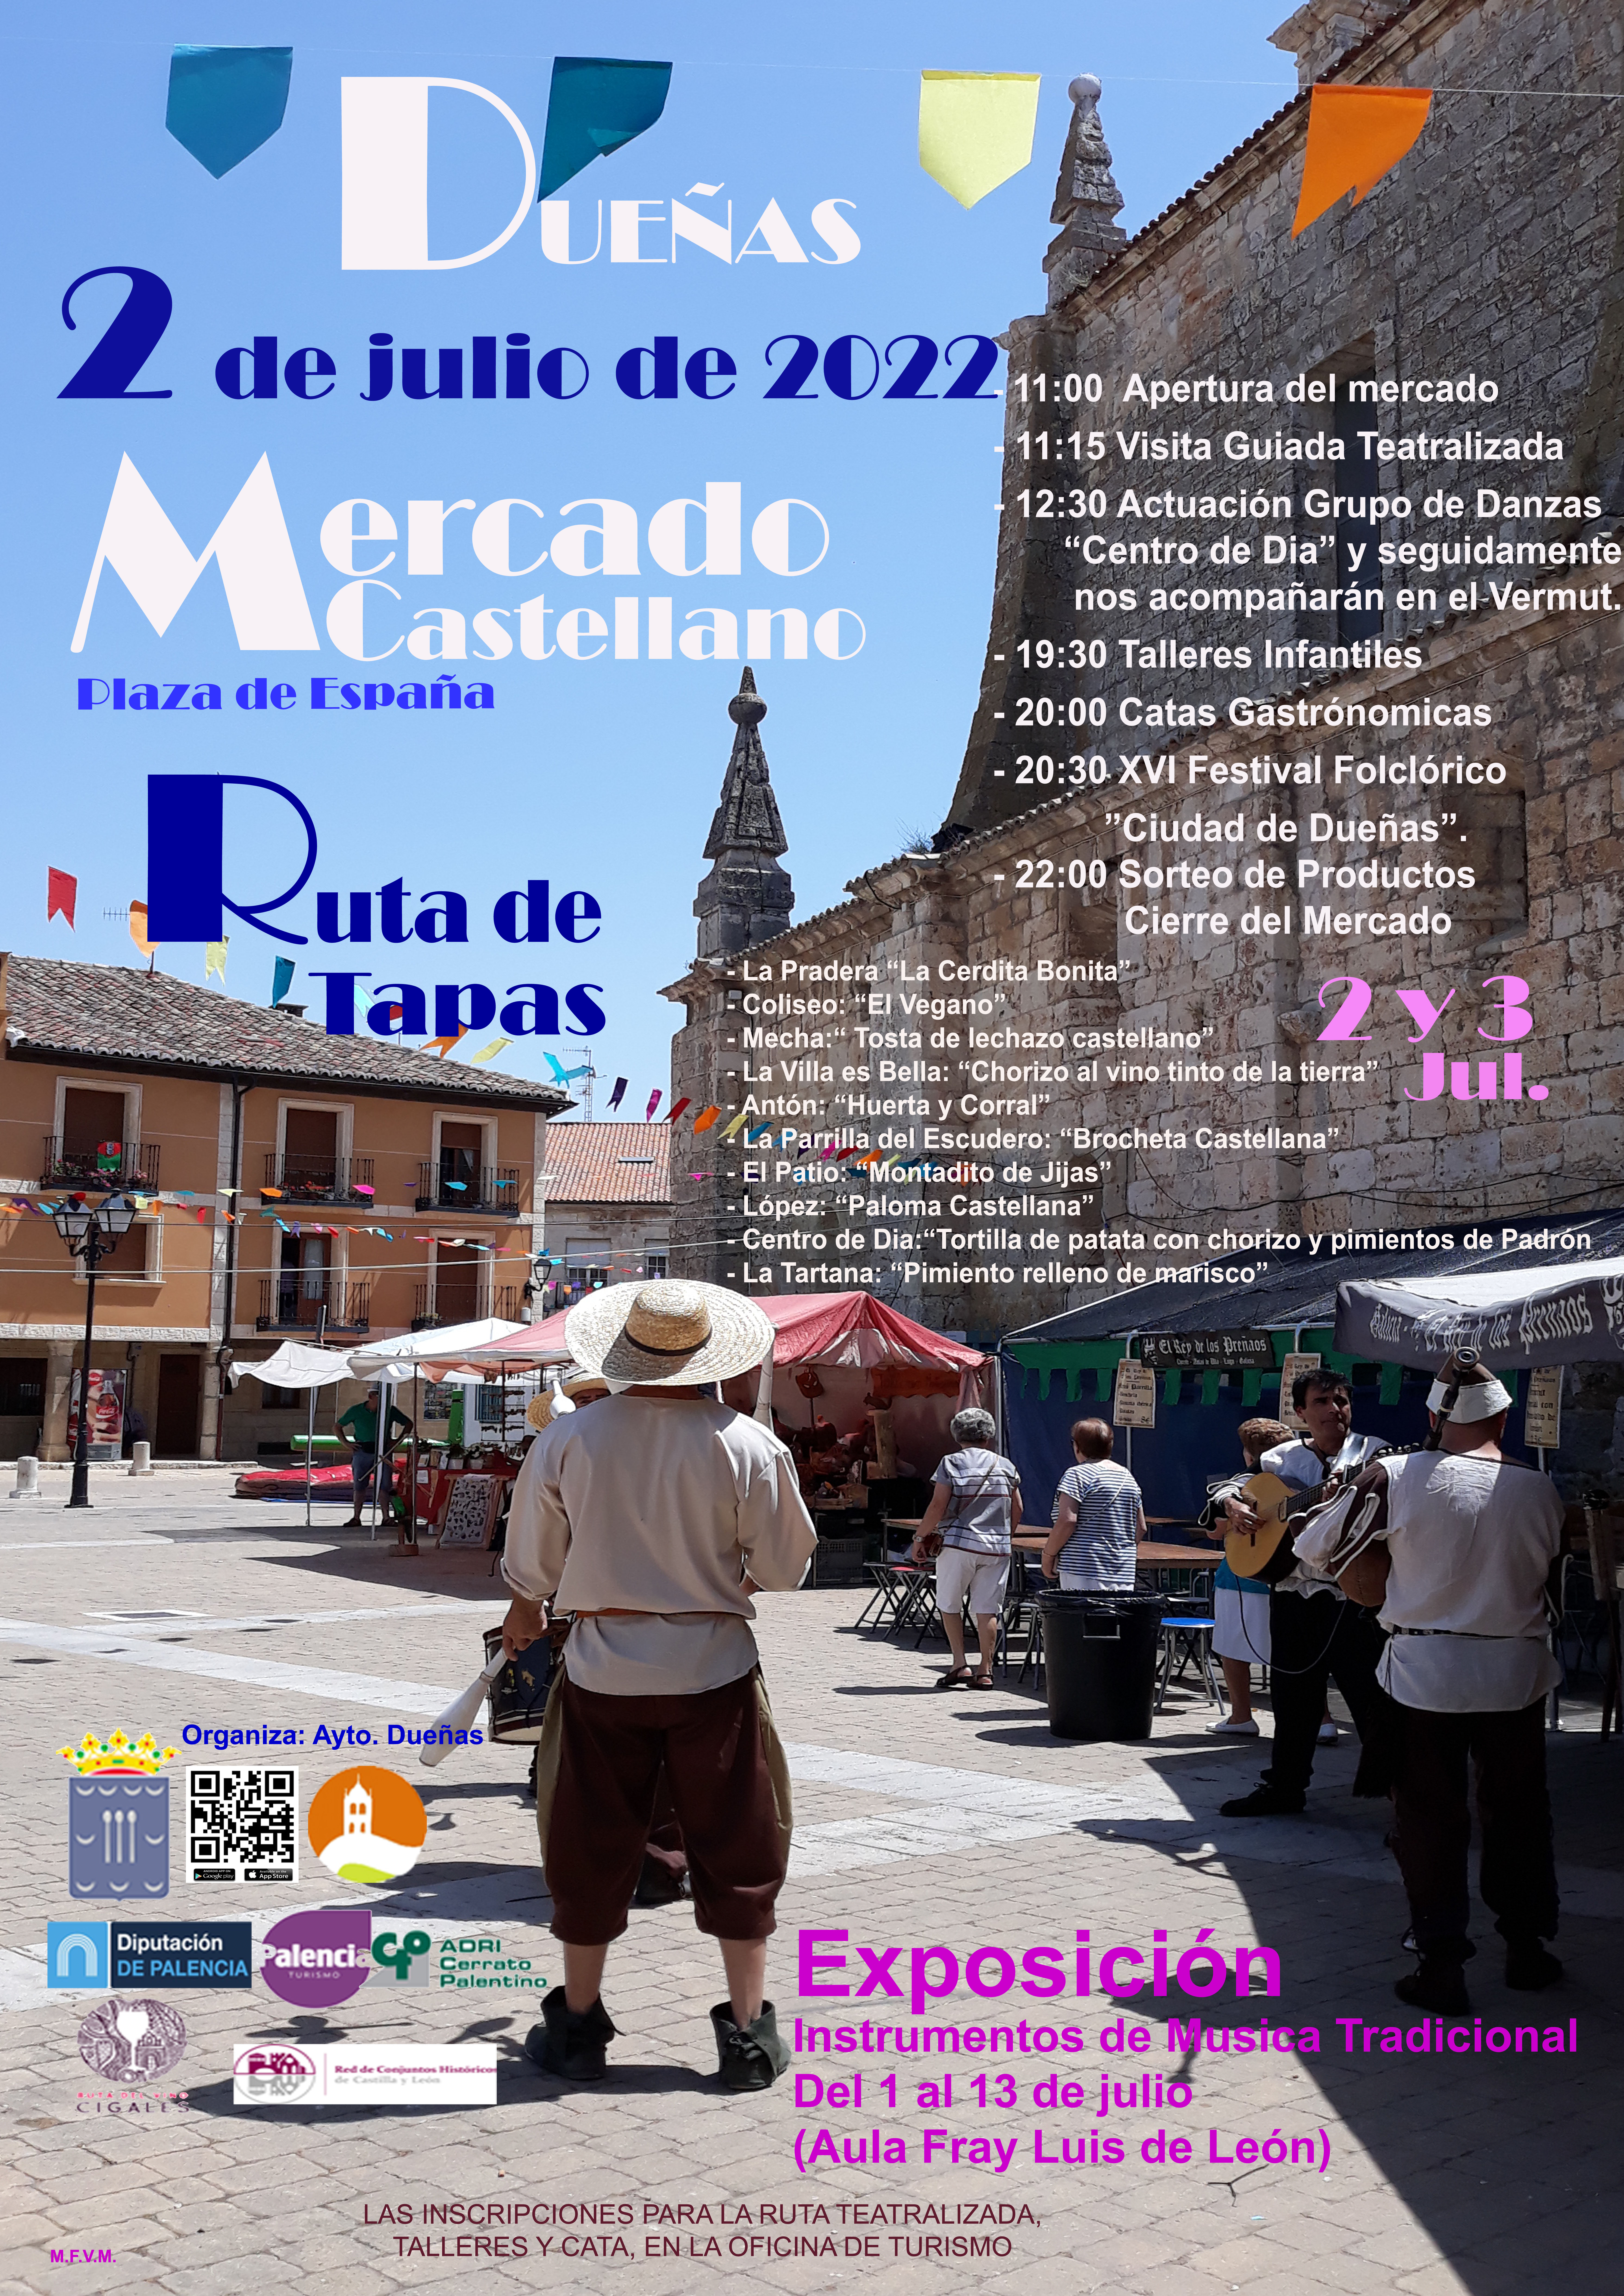 2 de Julio de 2022: Mercado Castellano Dueñas.